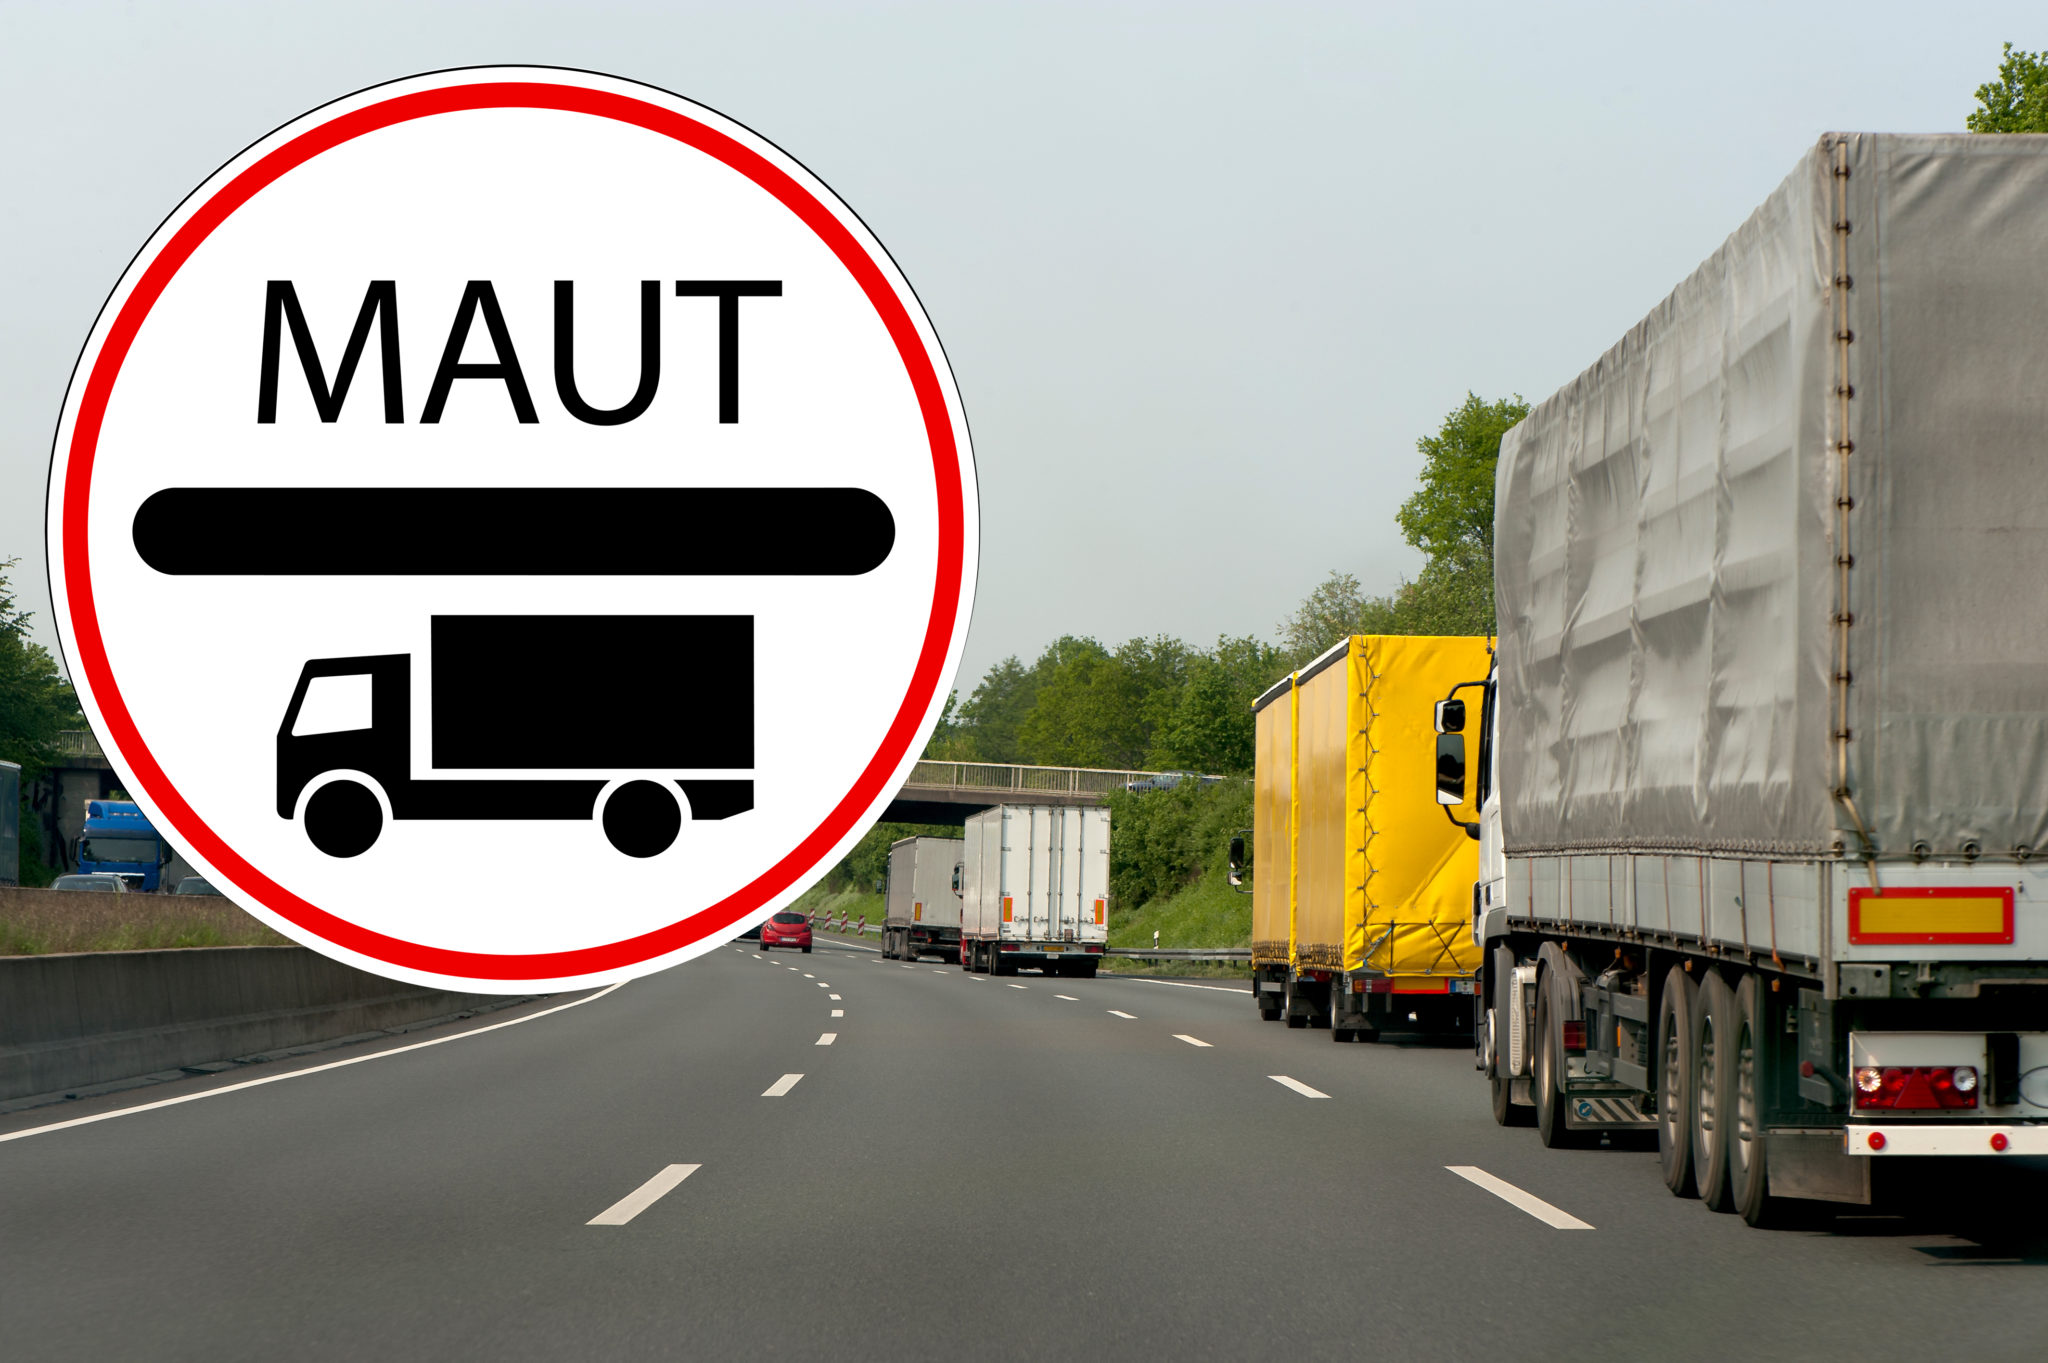 Zwrot opłat drogowych (Maut) w Niemczech po wyroku TSUE z